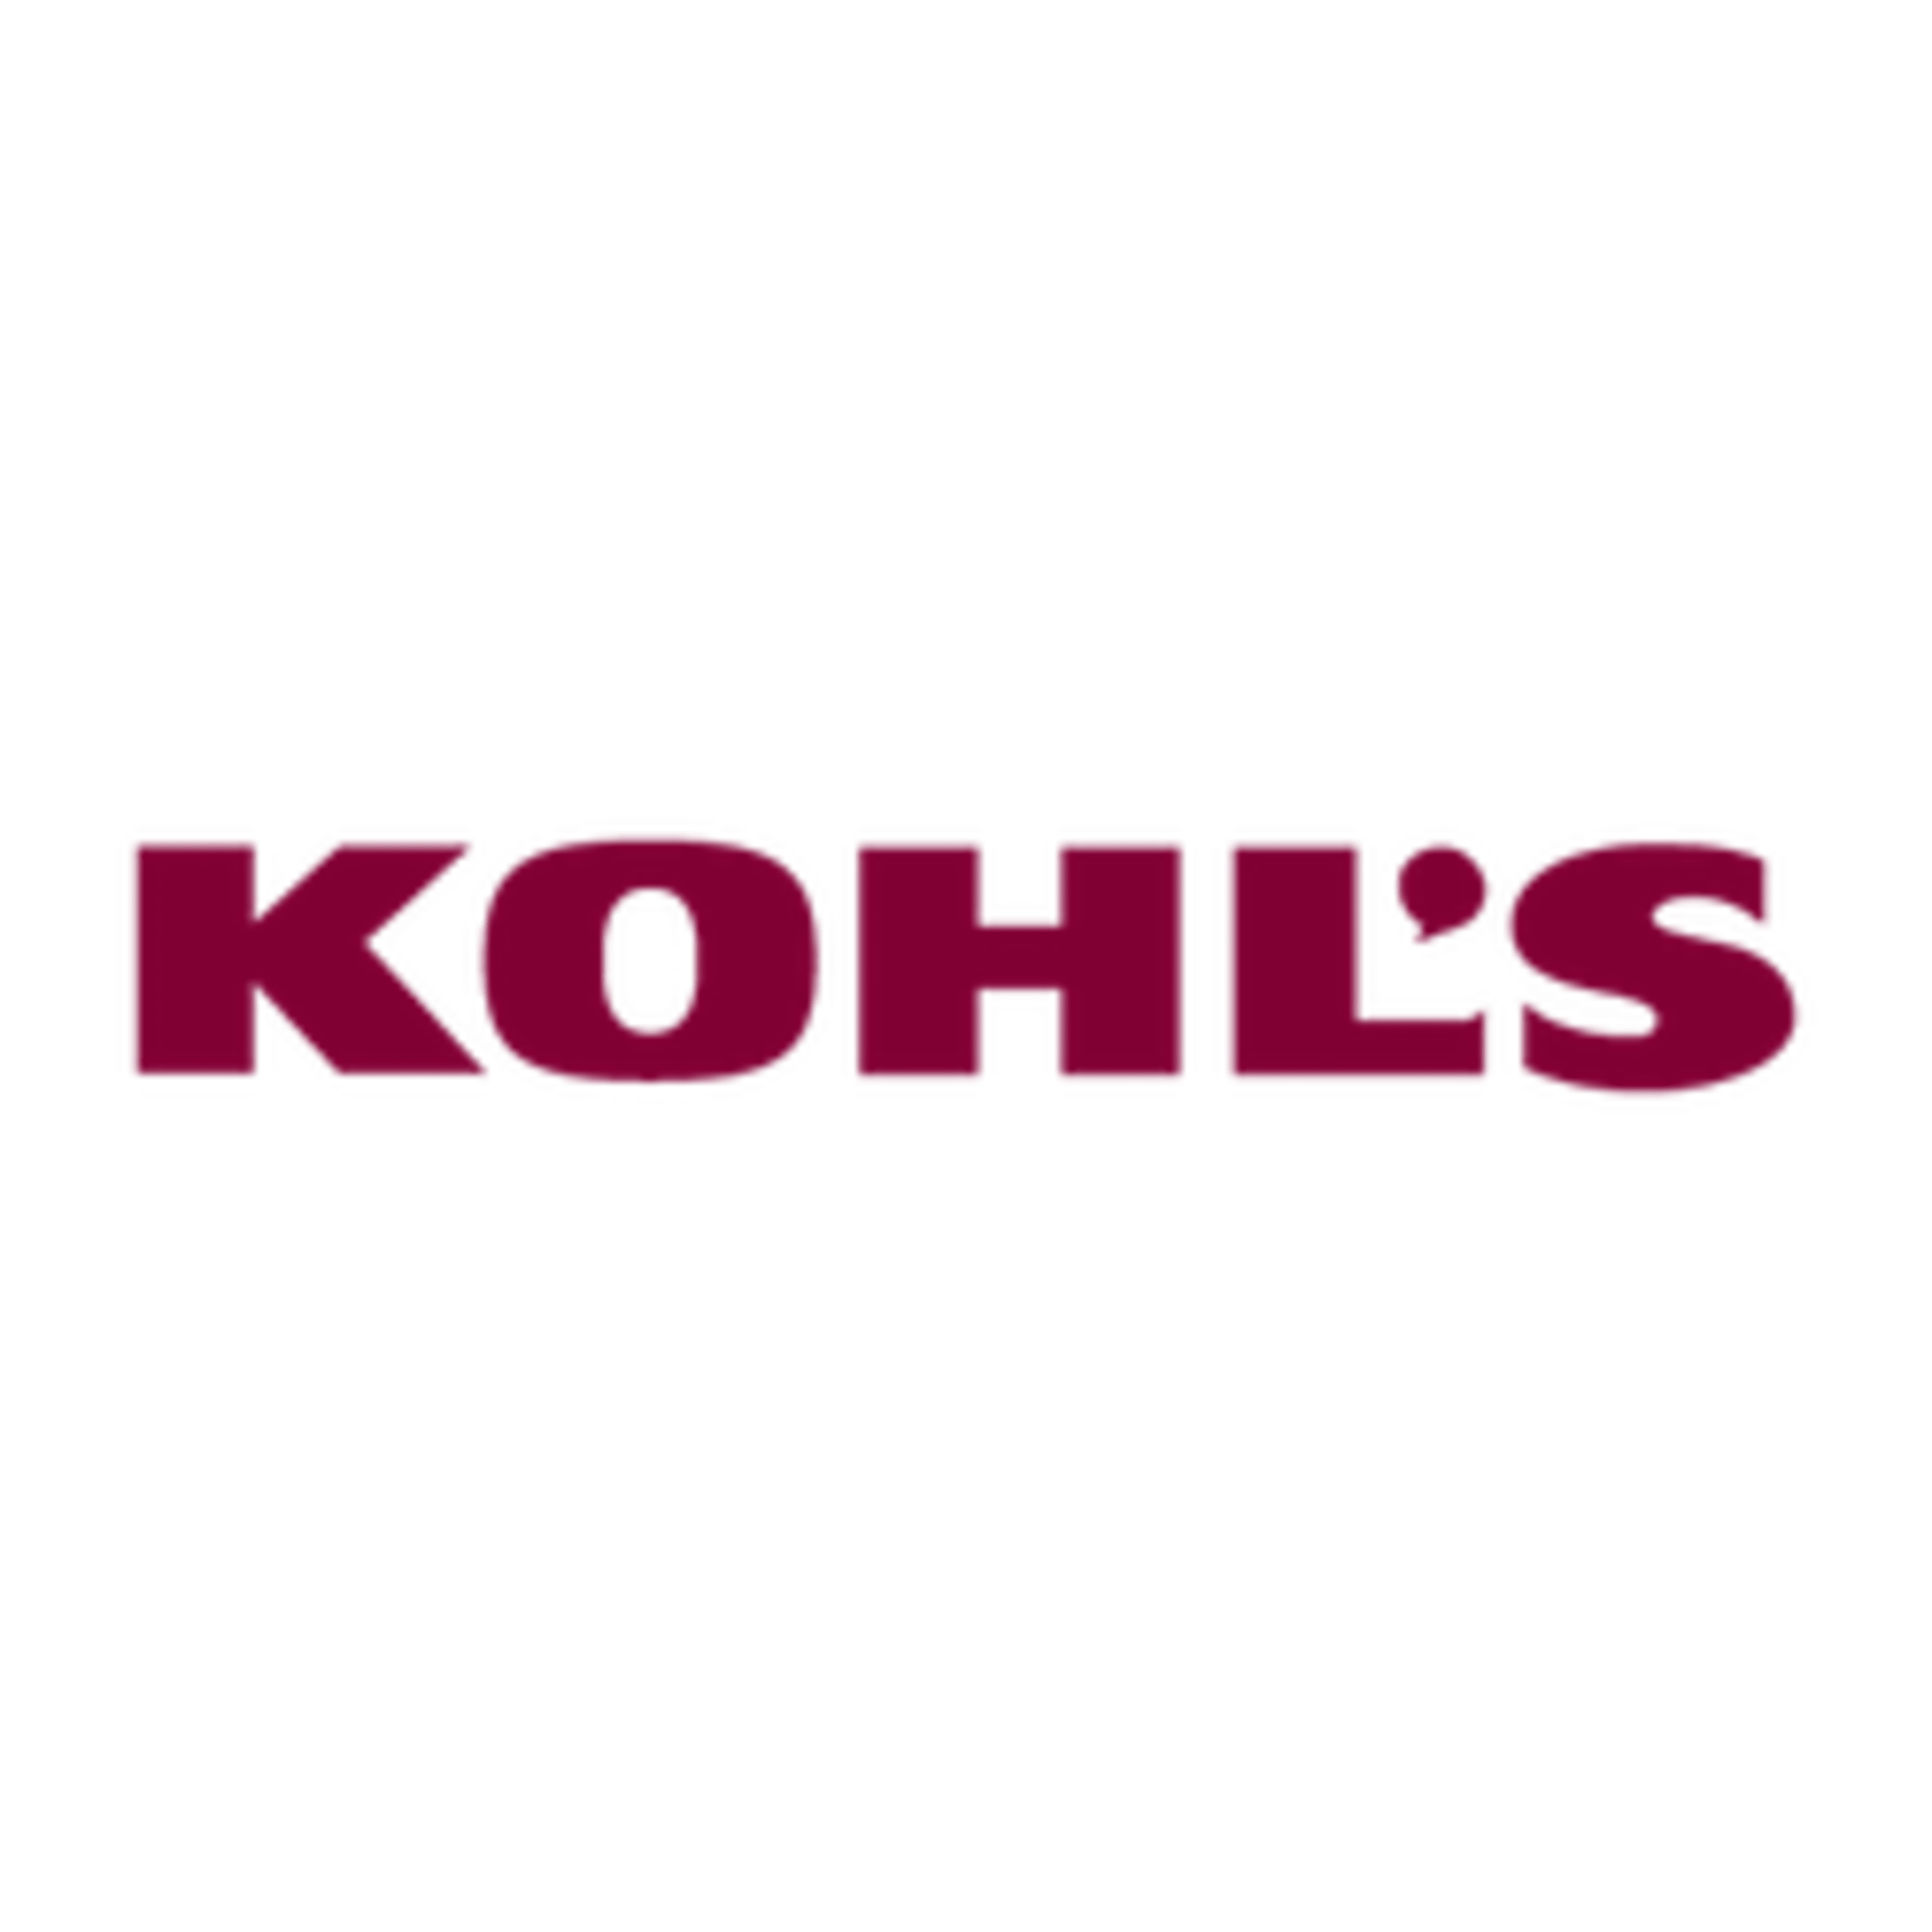 Kohl's - Wikipedia